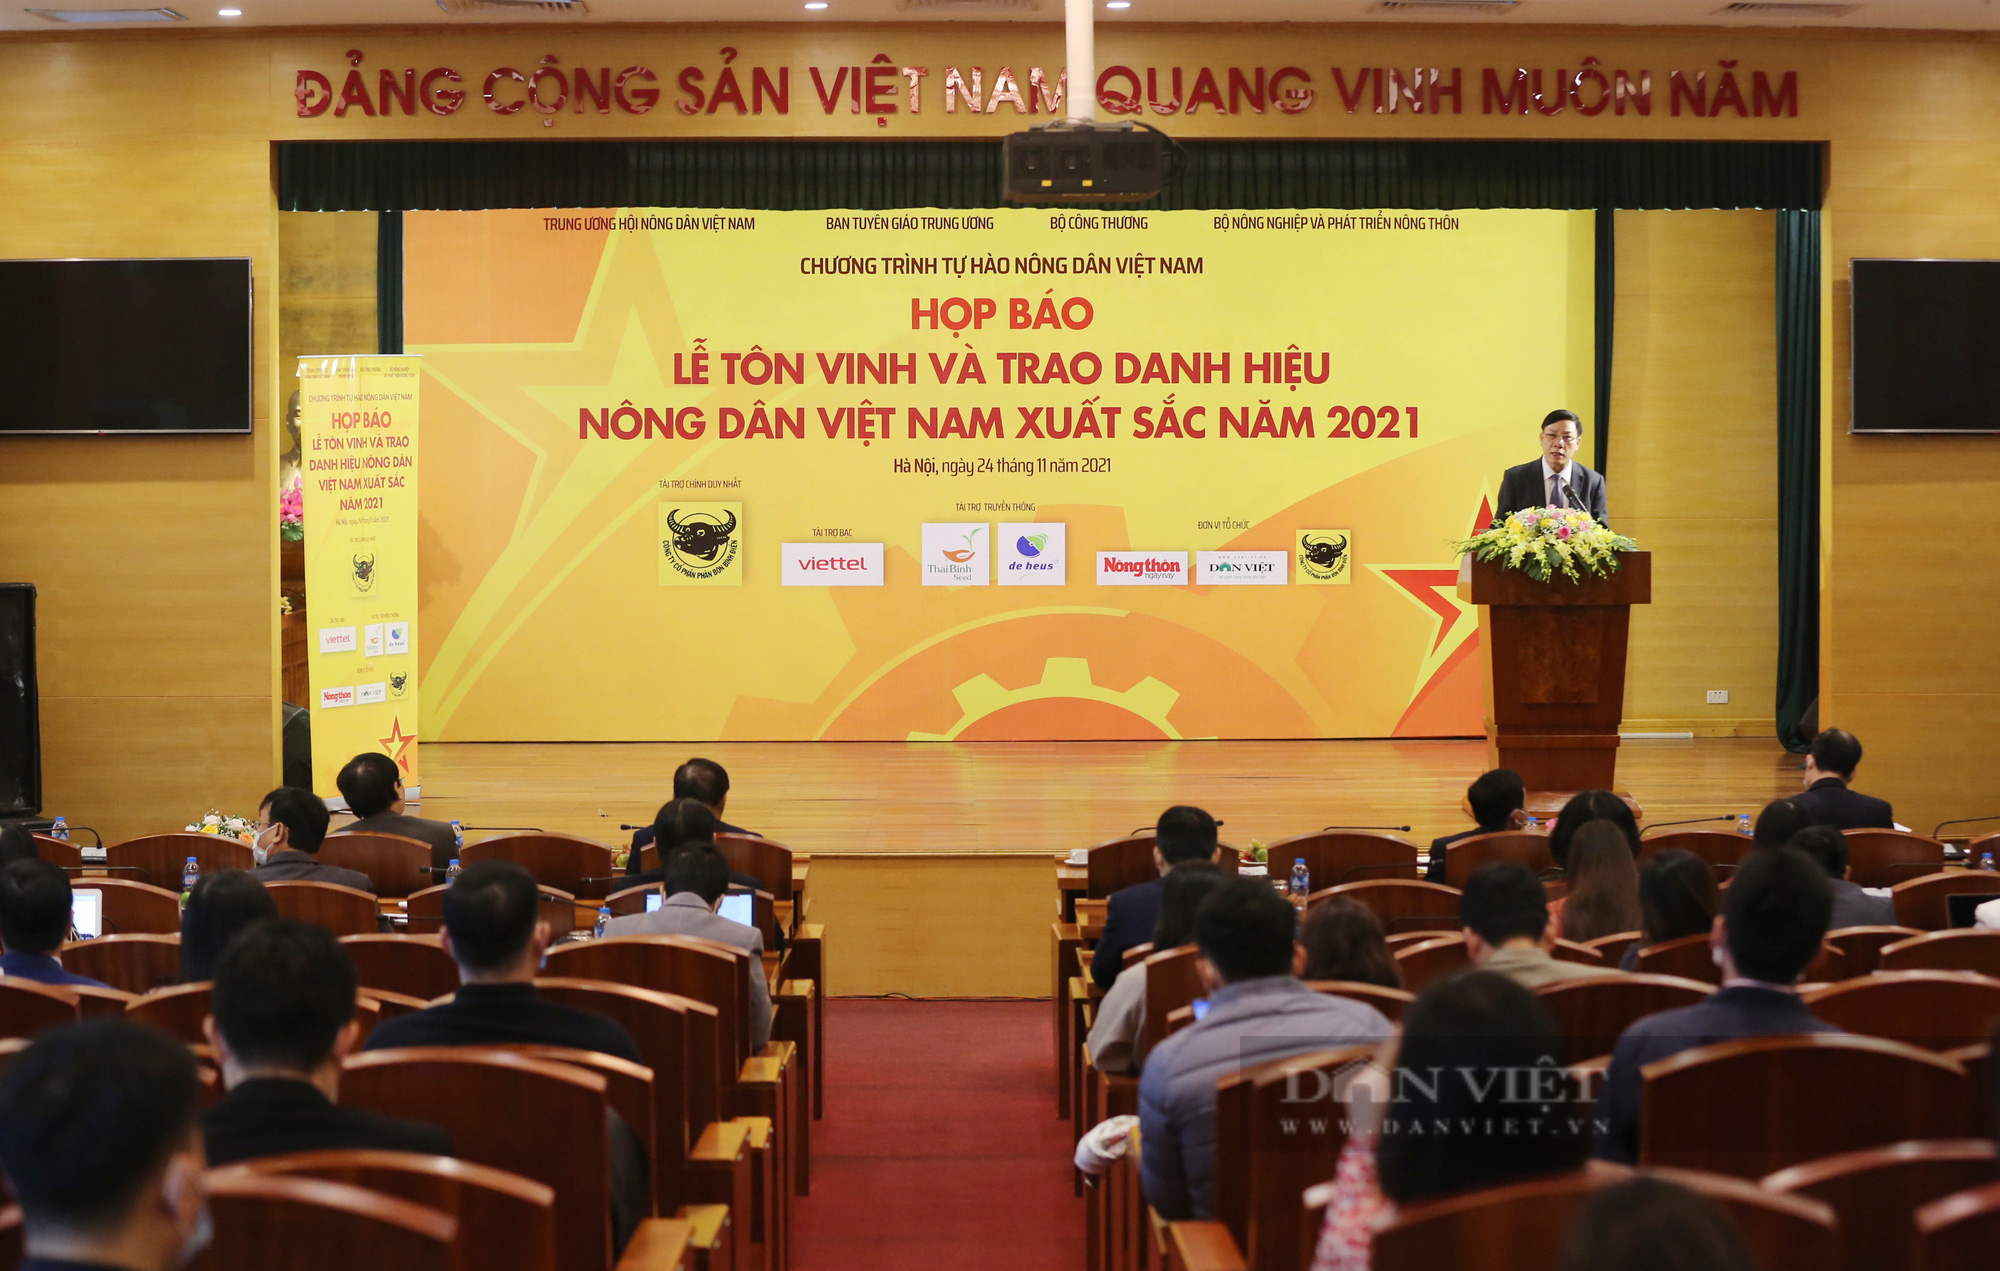 Toàn cảnh họp báo Lễ tôn vinh và trao danh hiệu Nông dân Việt Nam xuất sắc năm 2021 - Ảnh 1.